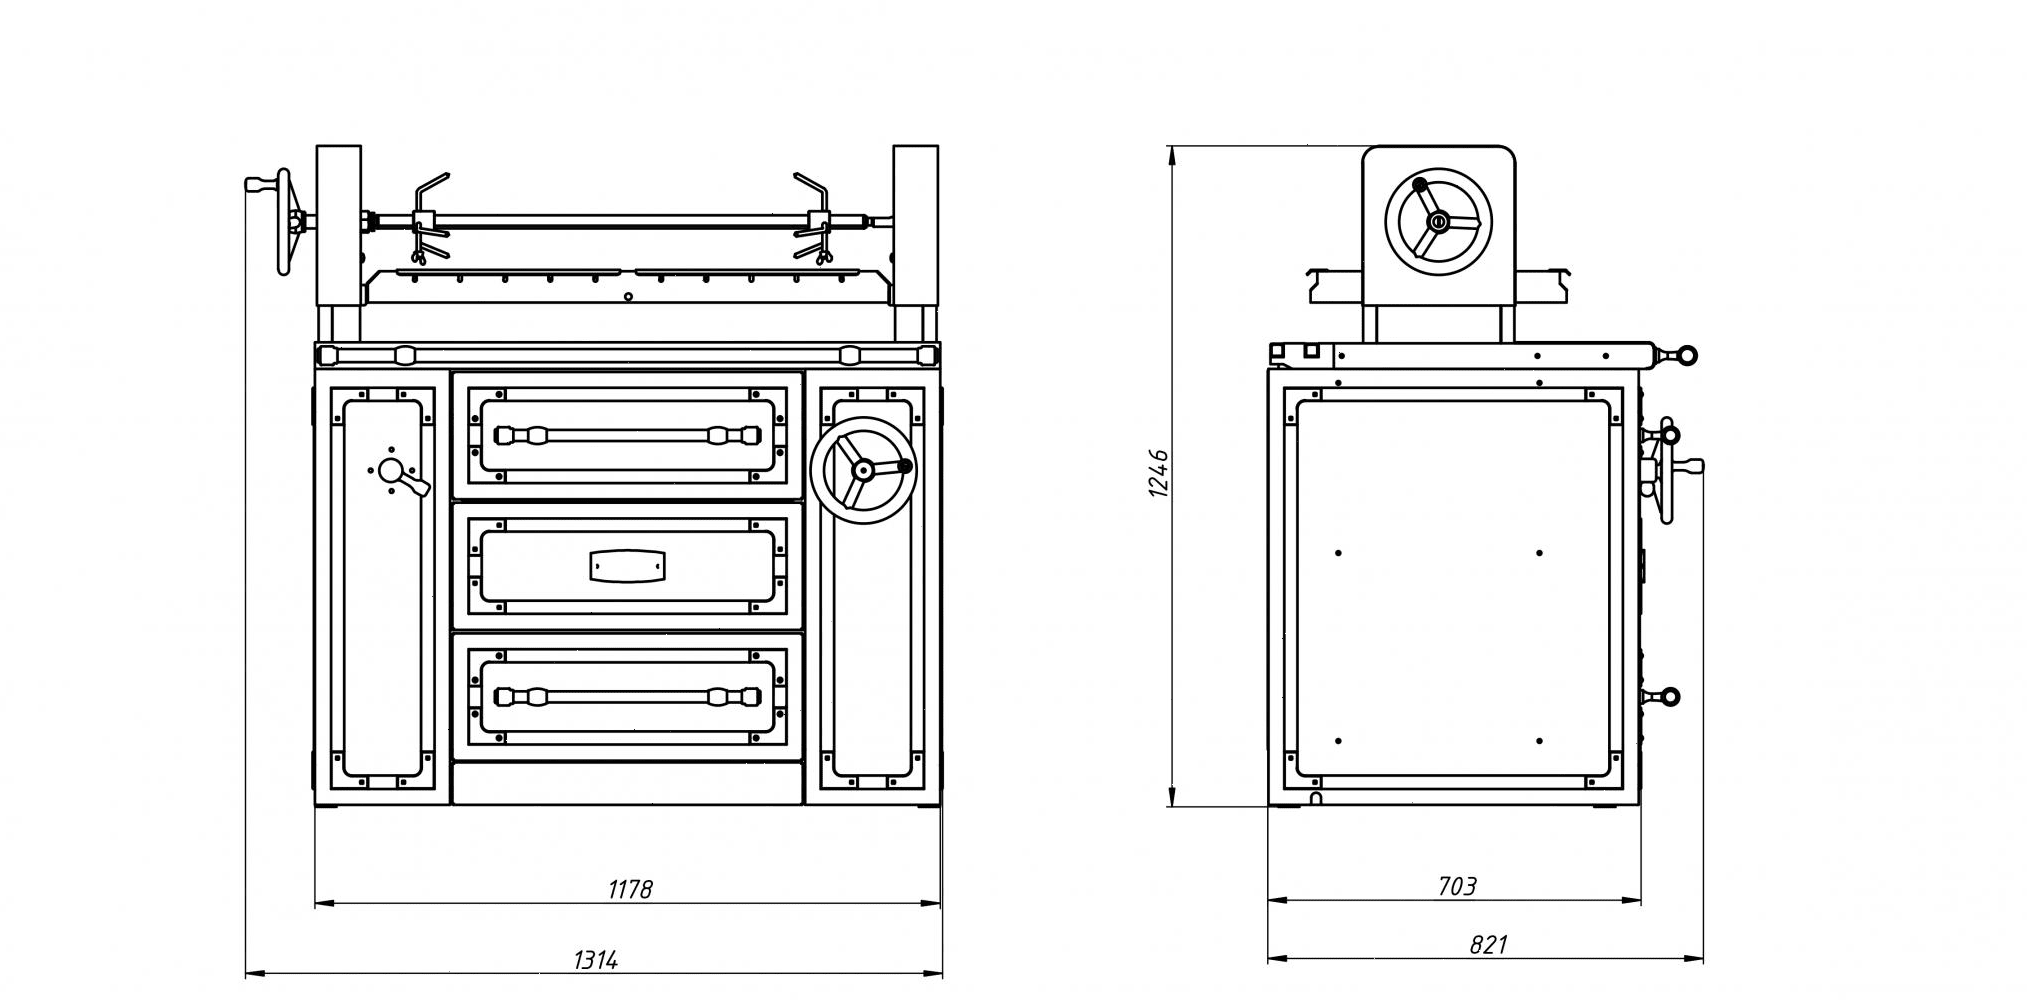 Печь на древесном топливе hjx 45 l с нейтральным шкафом